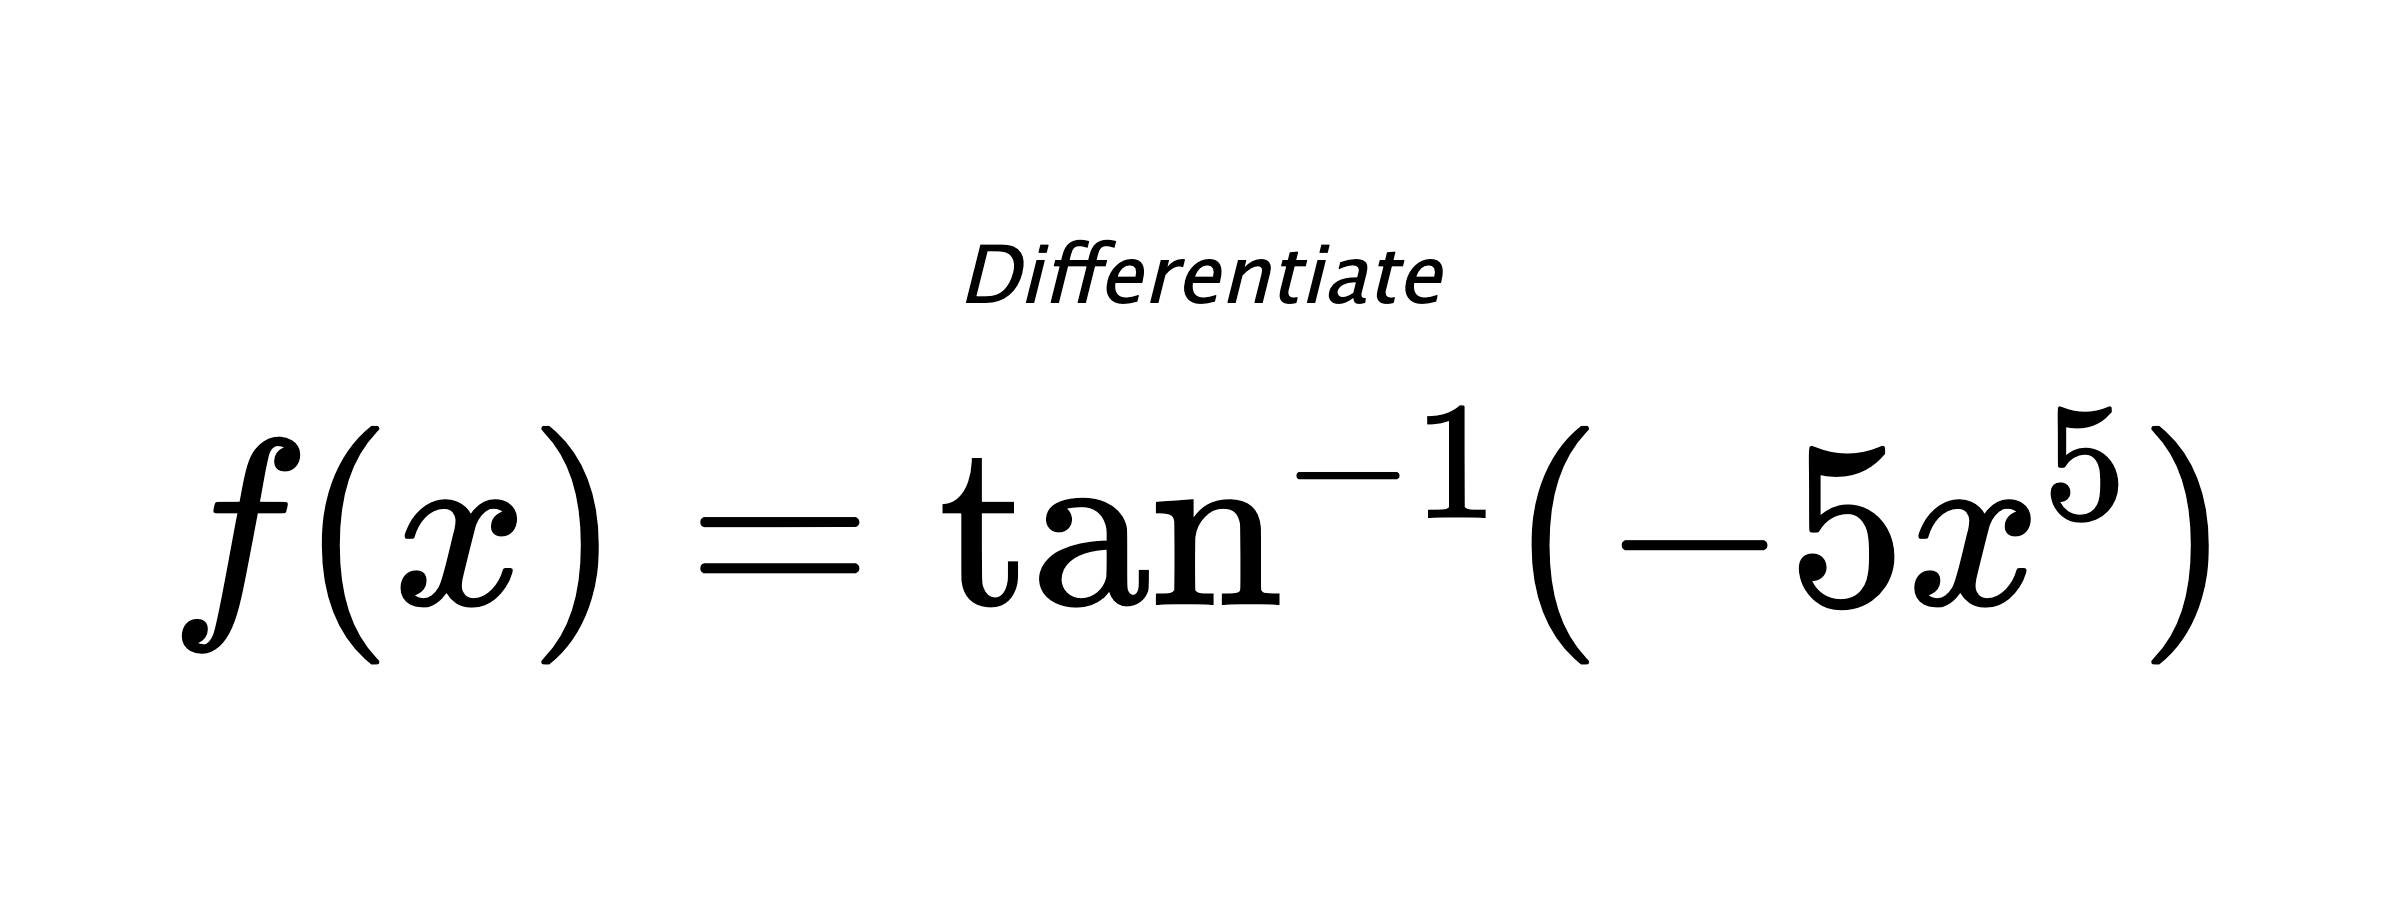 Differentiate $ f(x) = \tan^{-1} (-5x^5) $